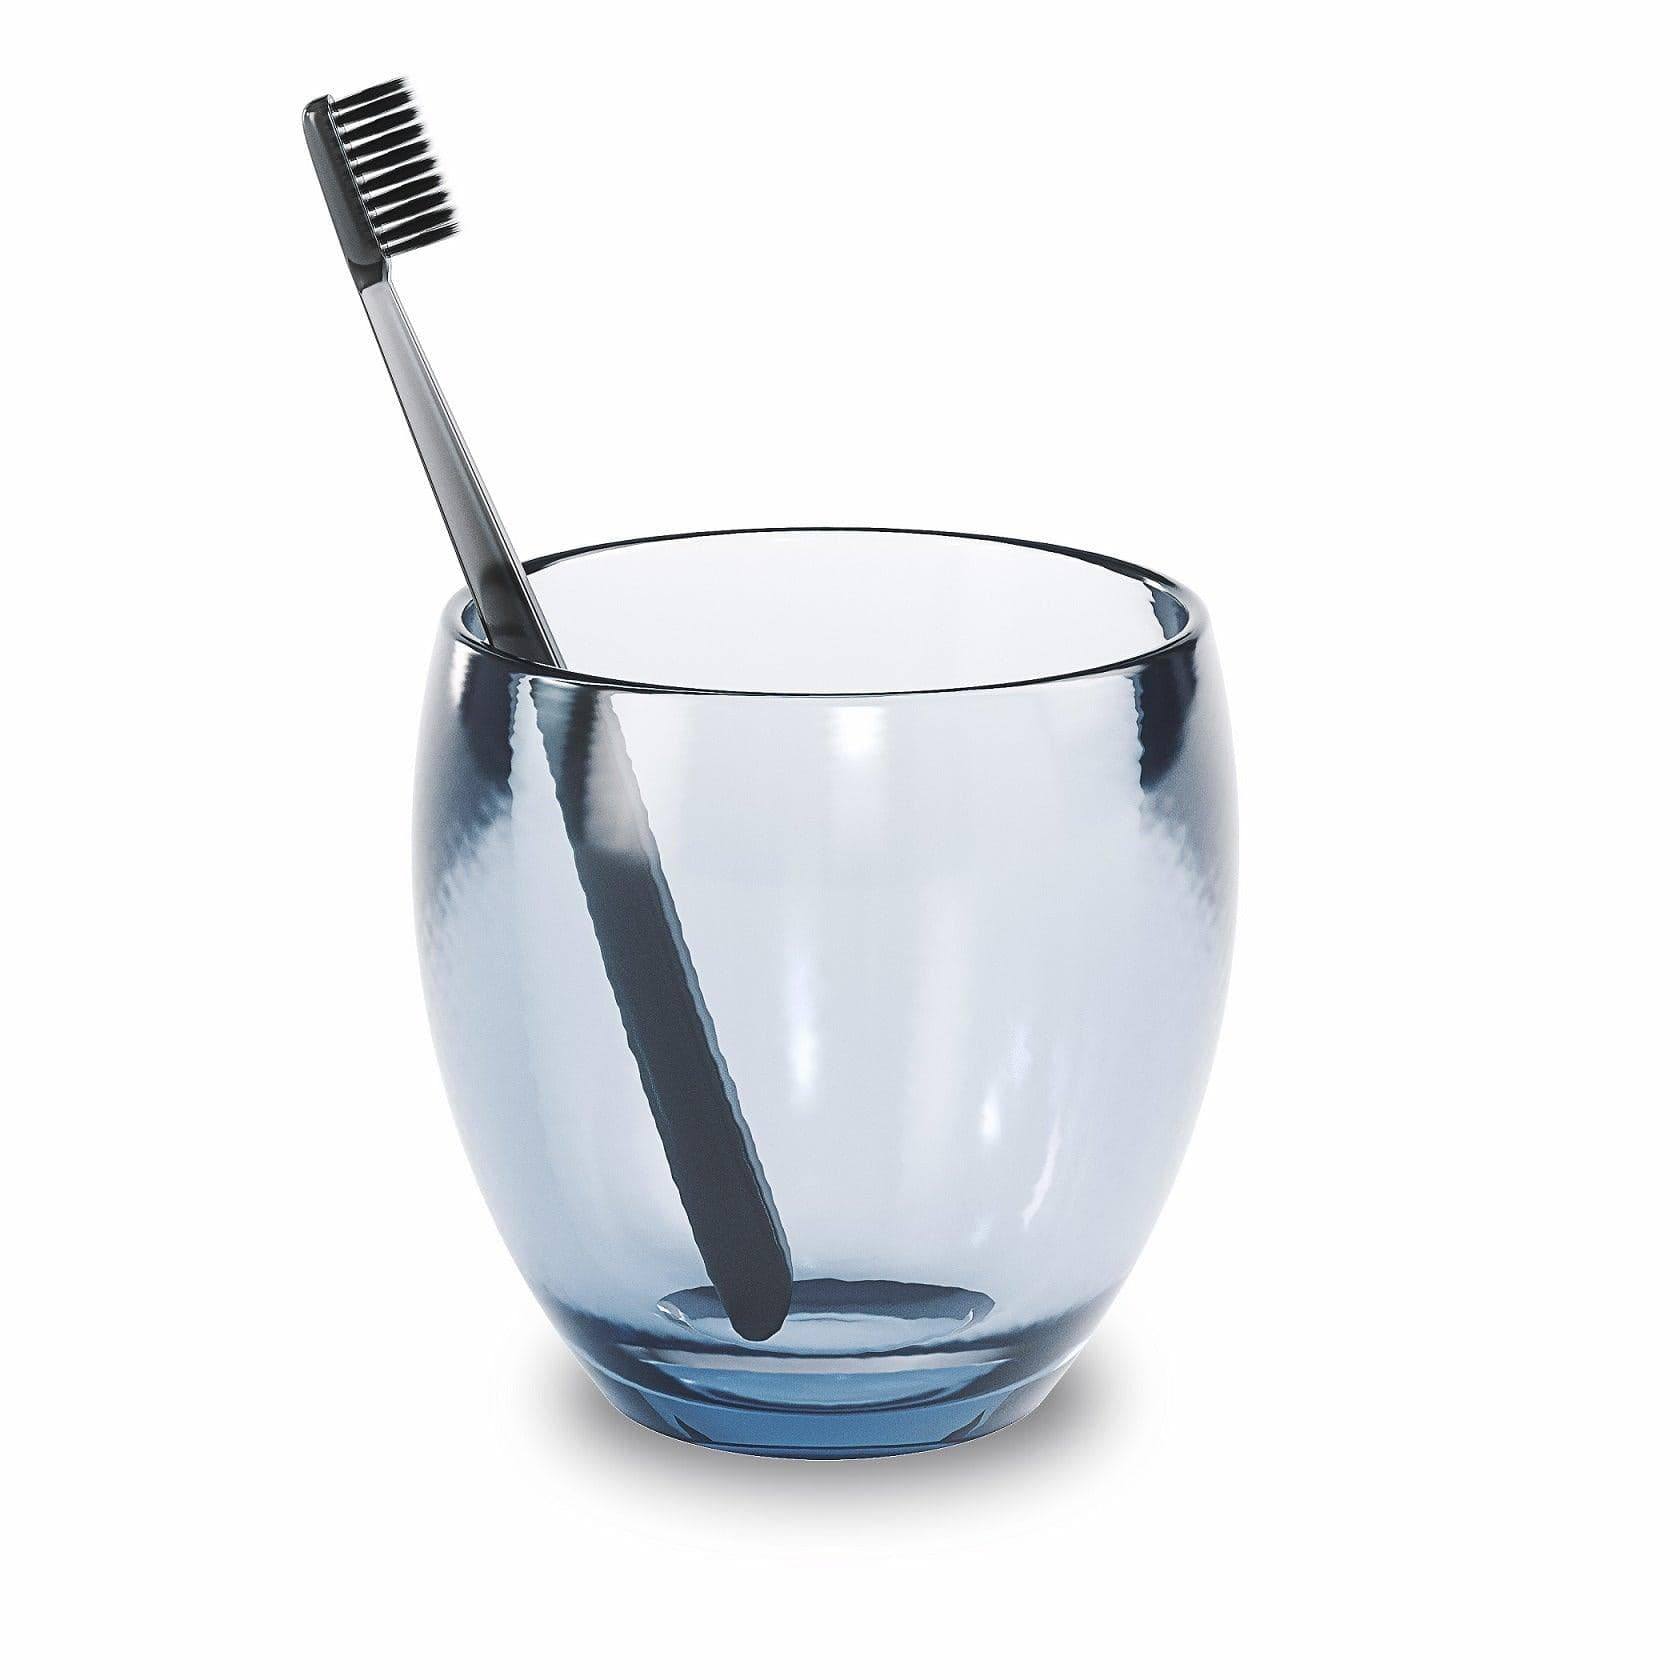 Umbra Droplet Toothbrush Holder - Denim Blue